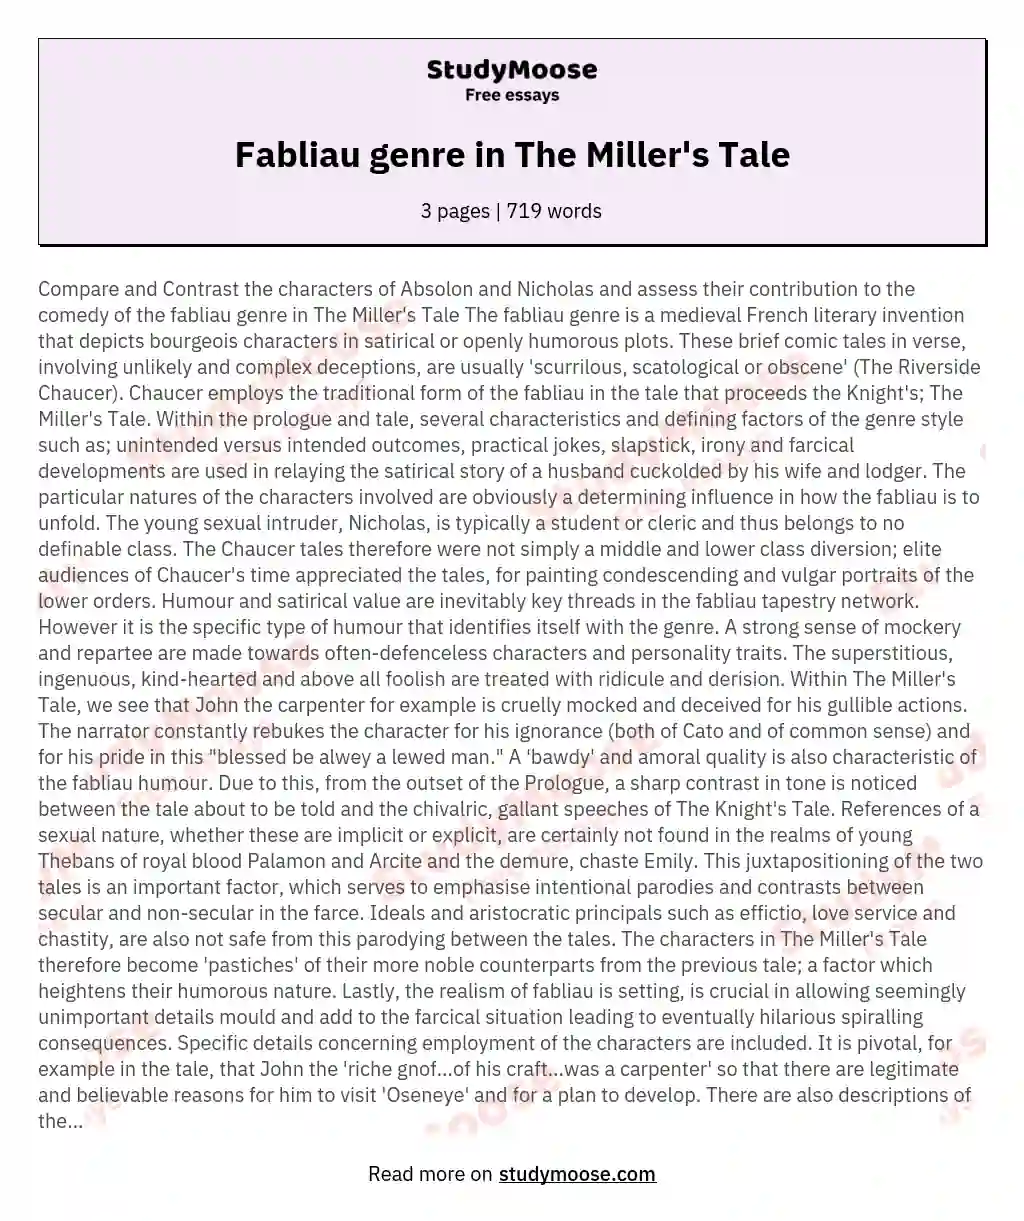 Fabliau genre in The Miller's Tale